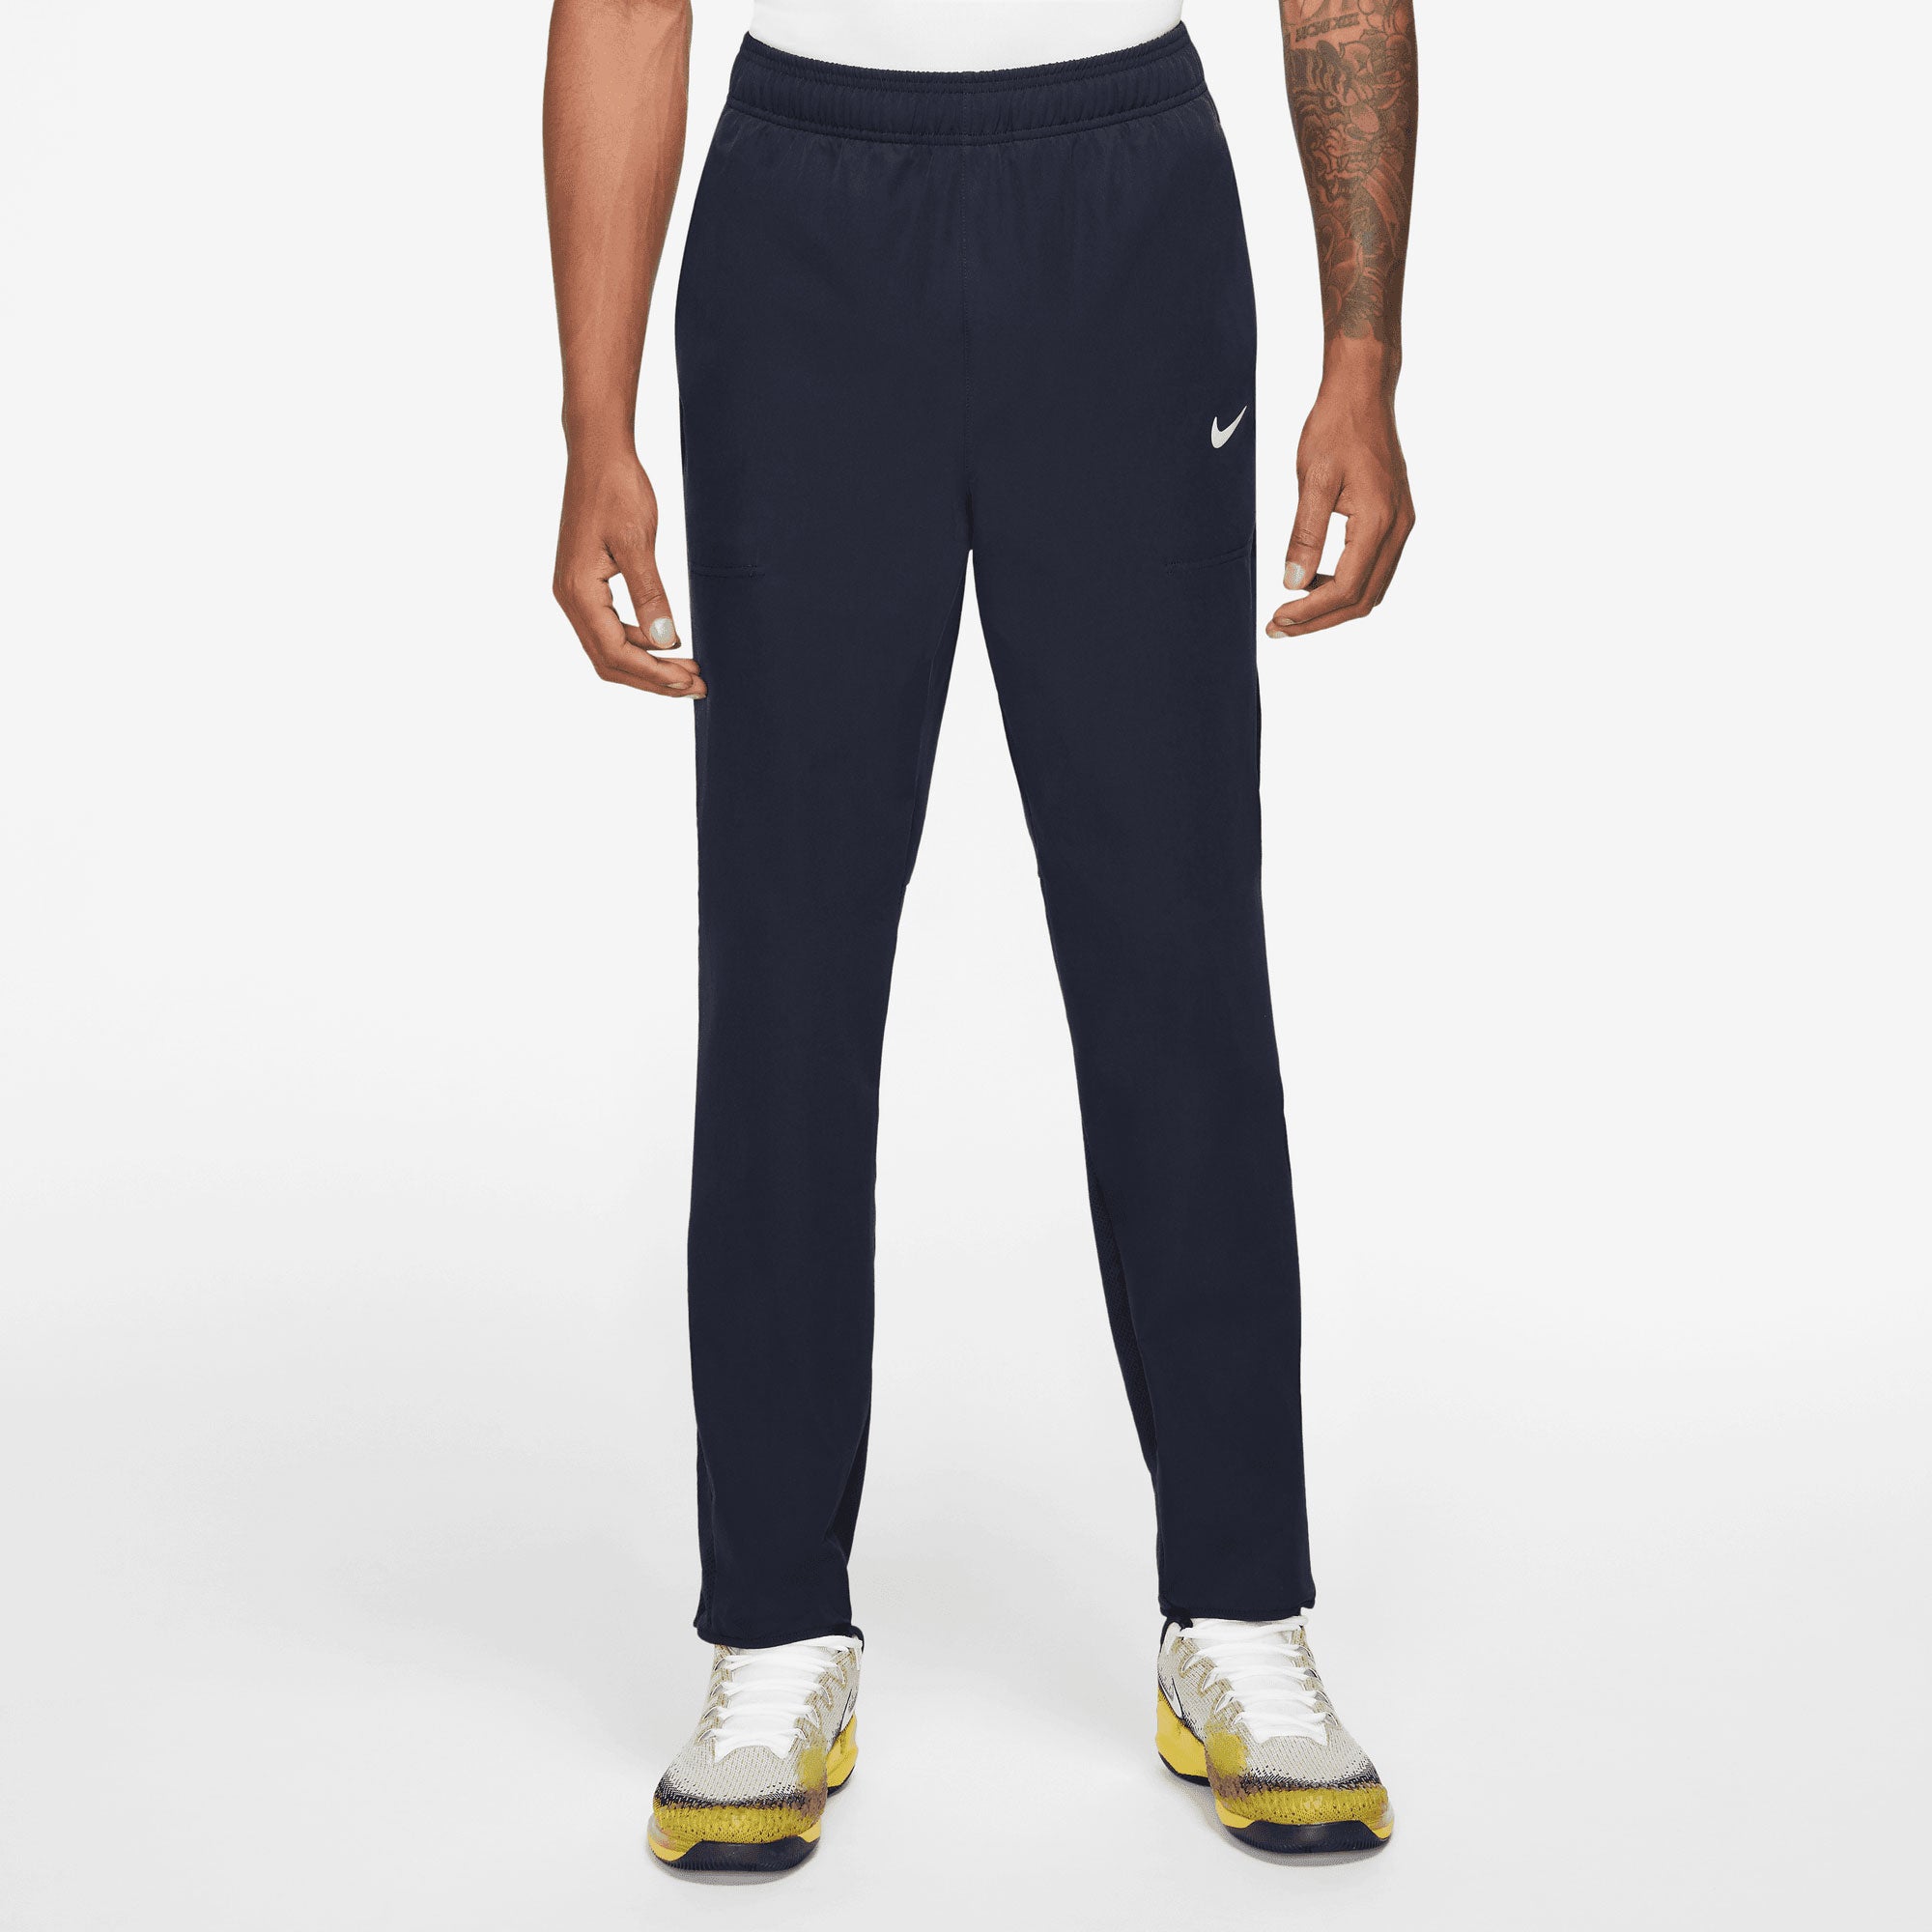 NikeCourt Advantage Men's Tennis Pants Blue (1)